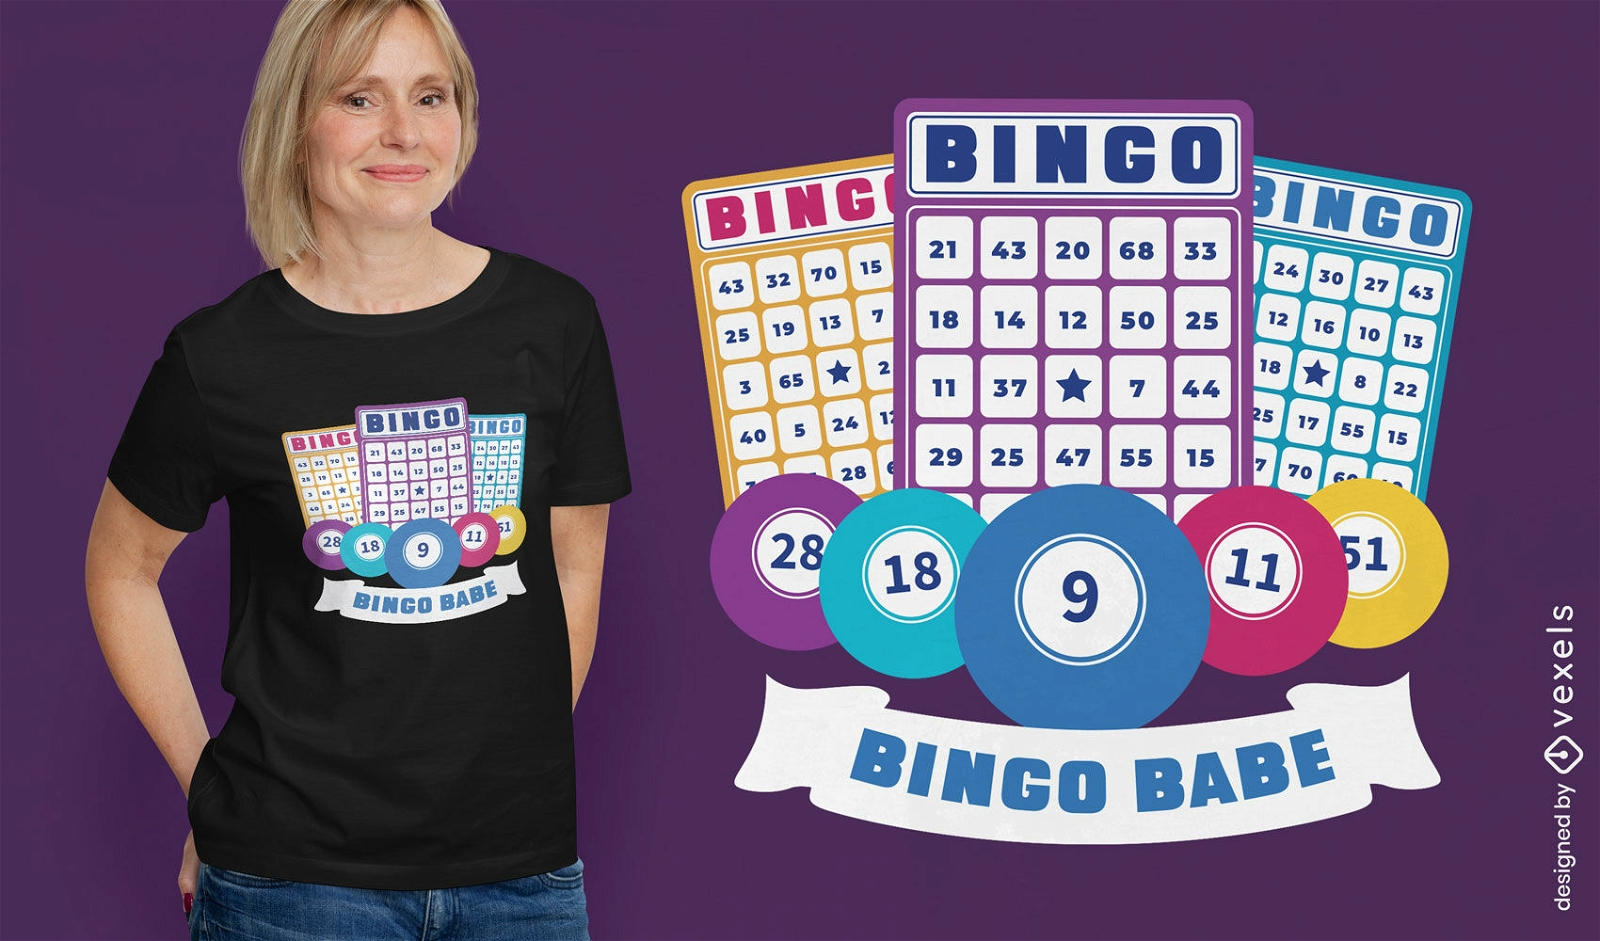 Bingo-Kartenspiel-T-Shirt-Design